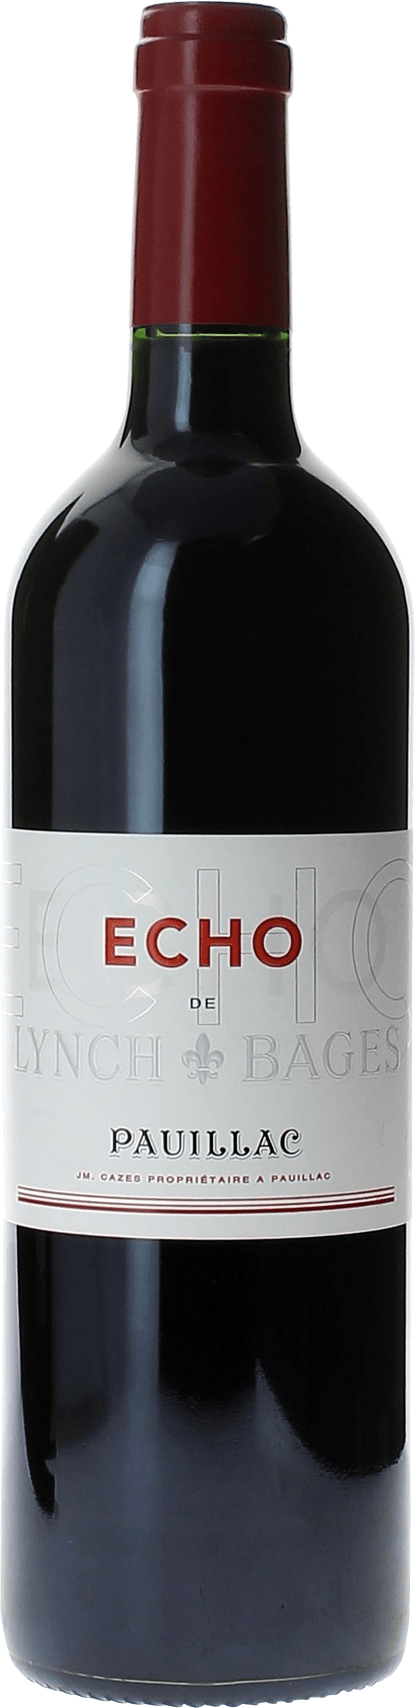 Echo lynch bages 2016 2me vin de LYNCH BAGES Pauillac, Bordeaux rouge